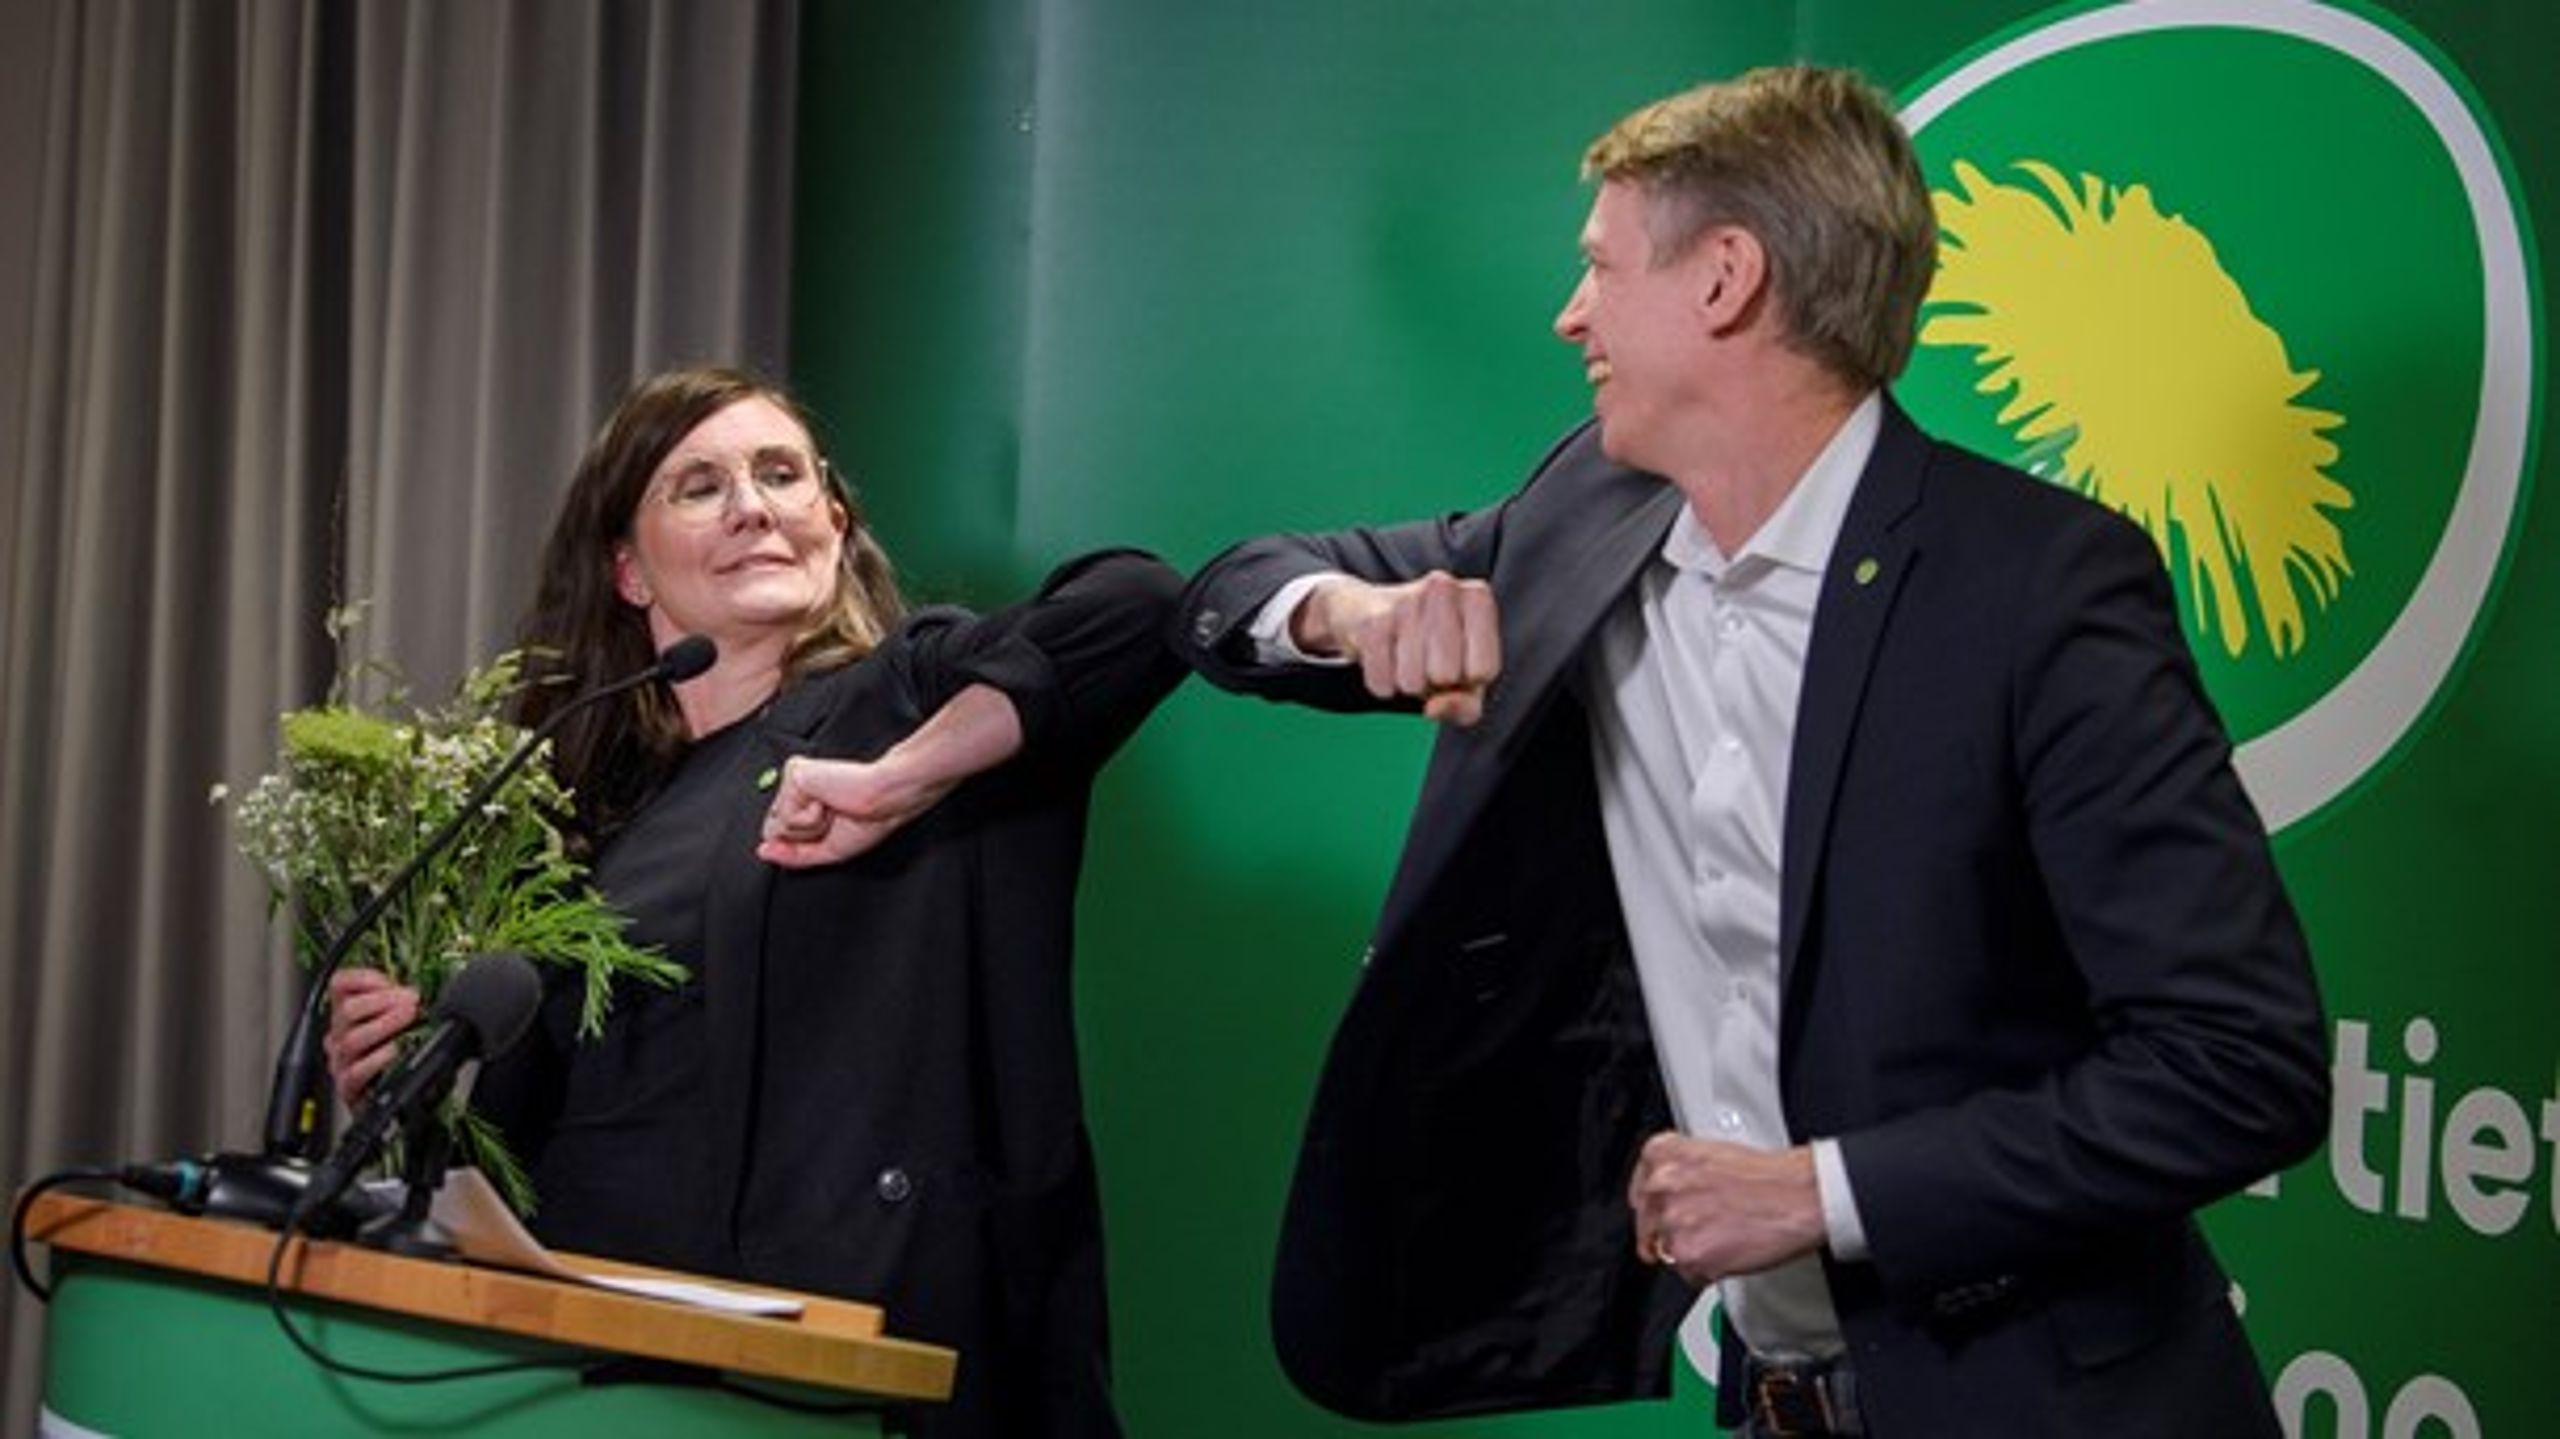 Märta Stenevi och Per Bolund. MP:s nya språkrörsduo.